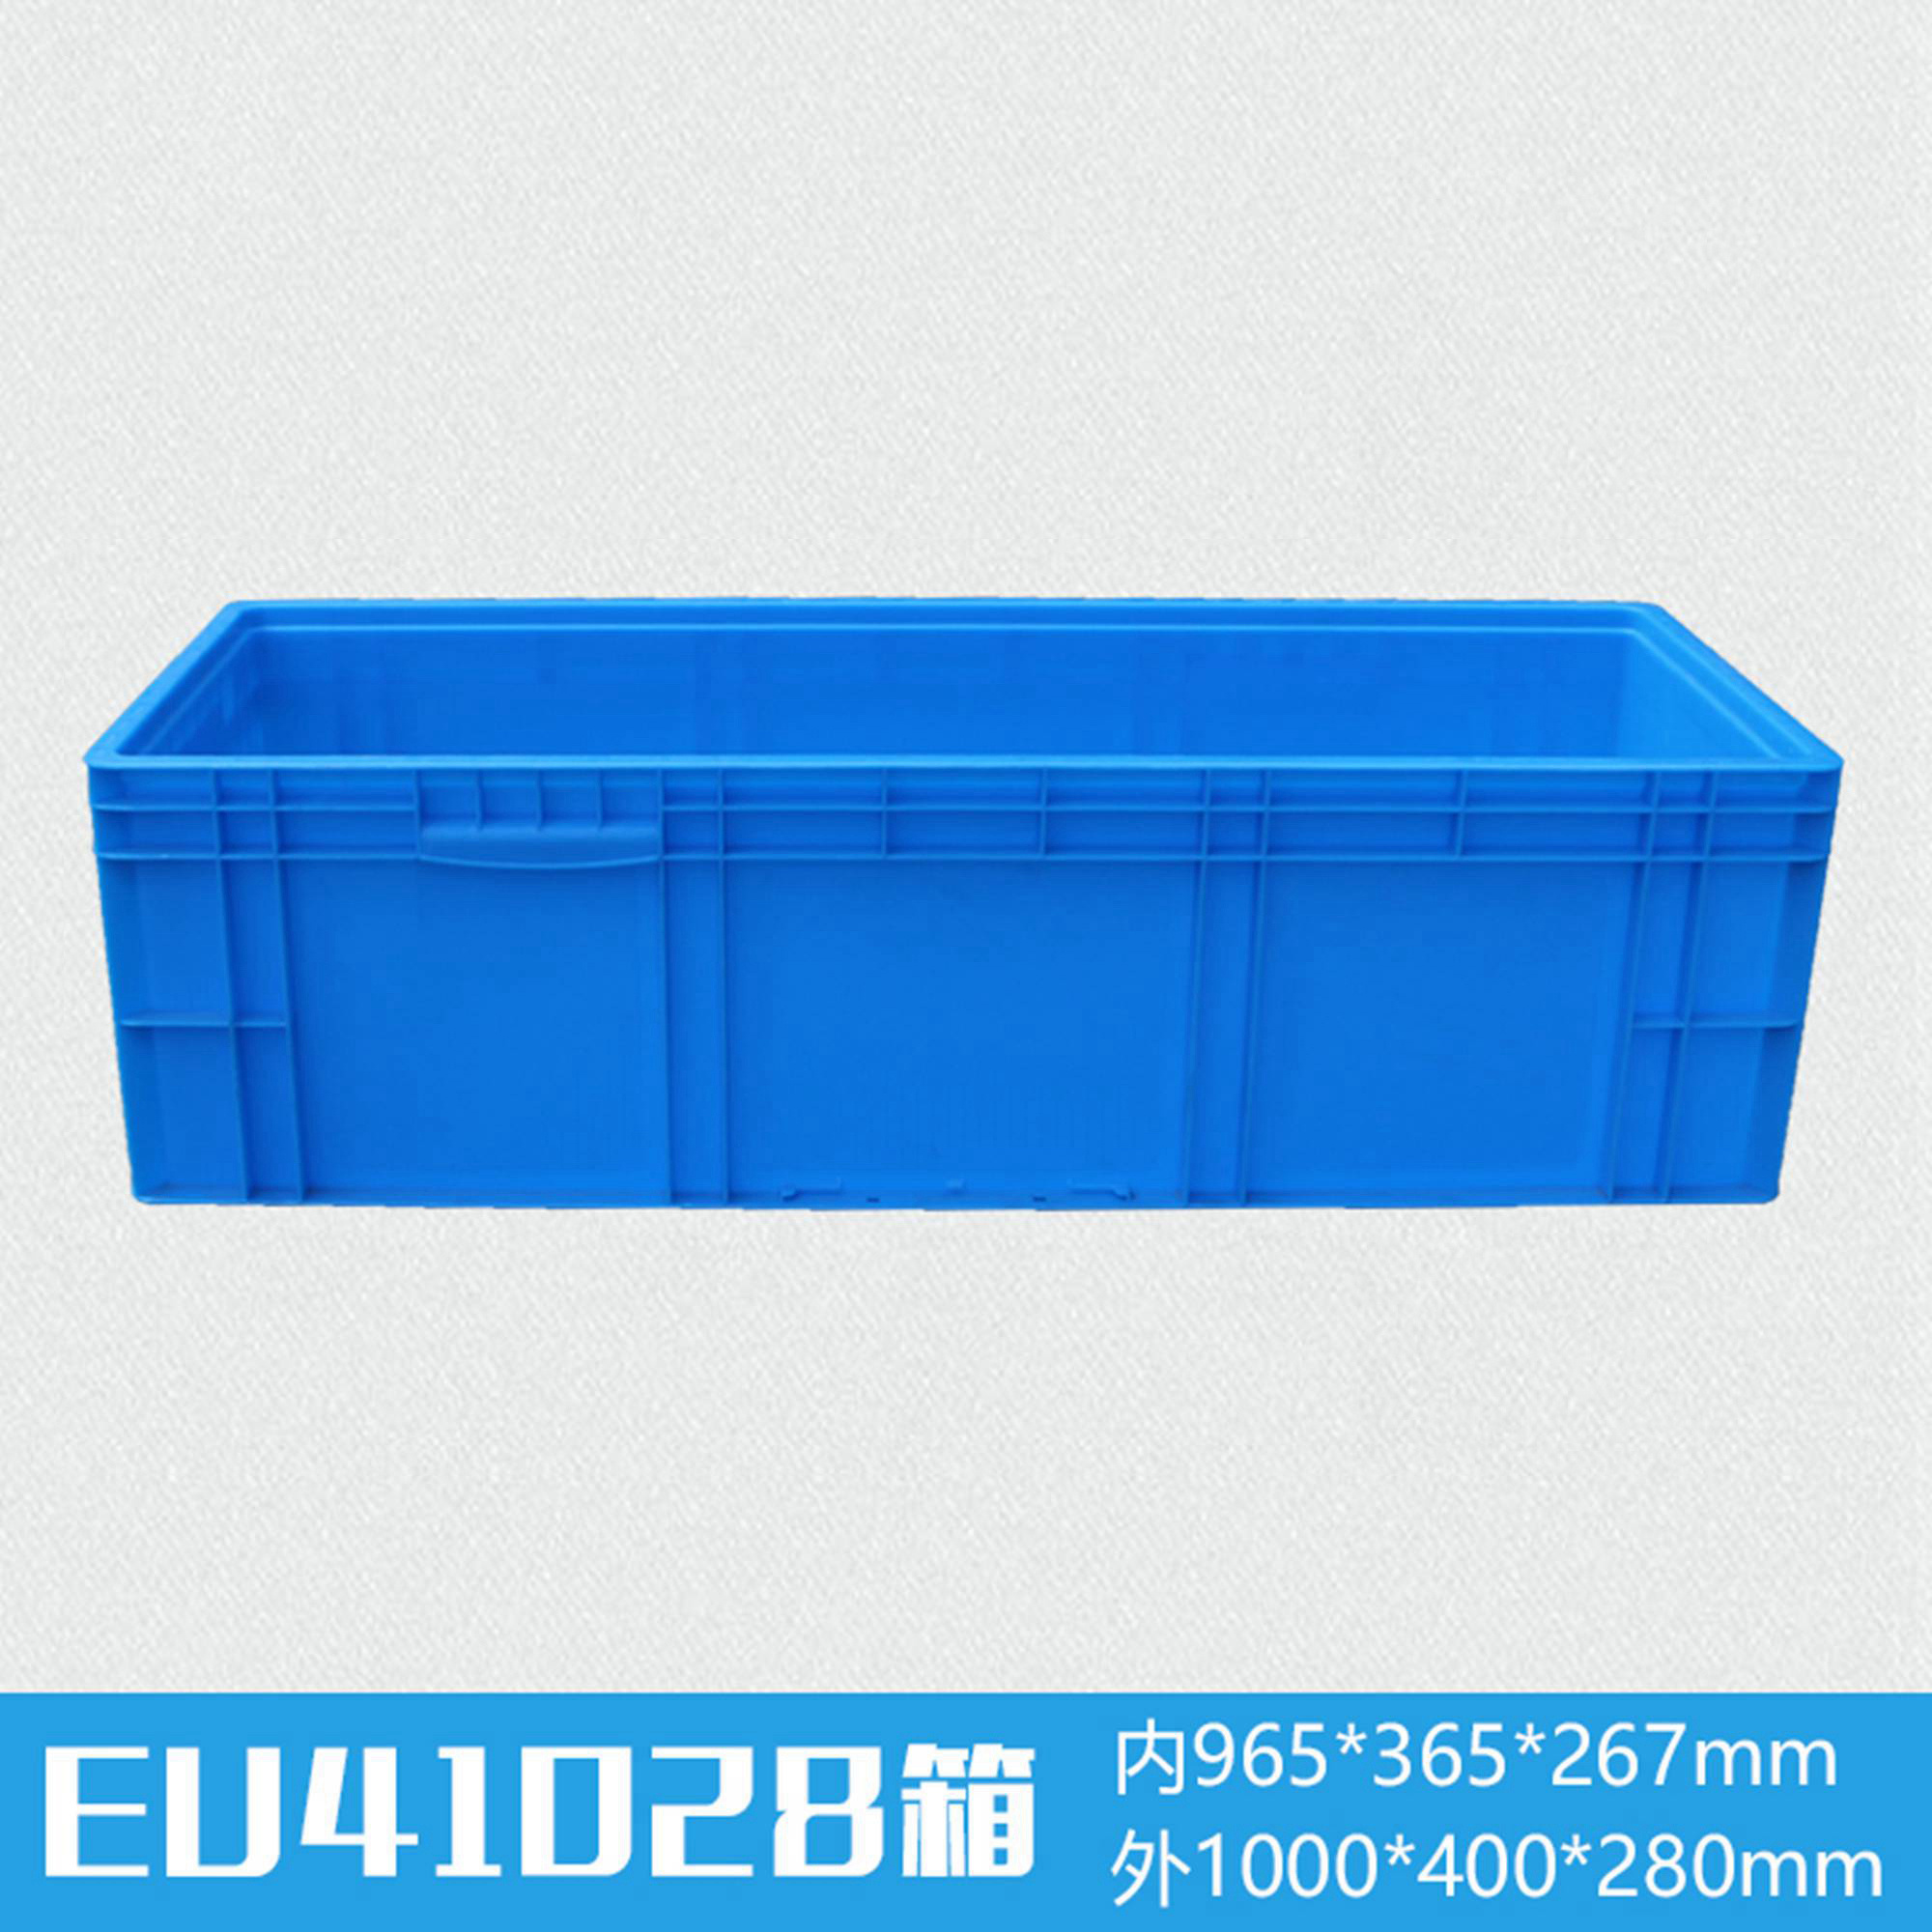 轩盛塑业EU41028塑料物流箱